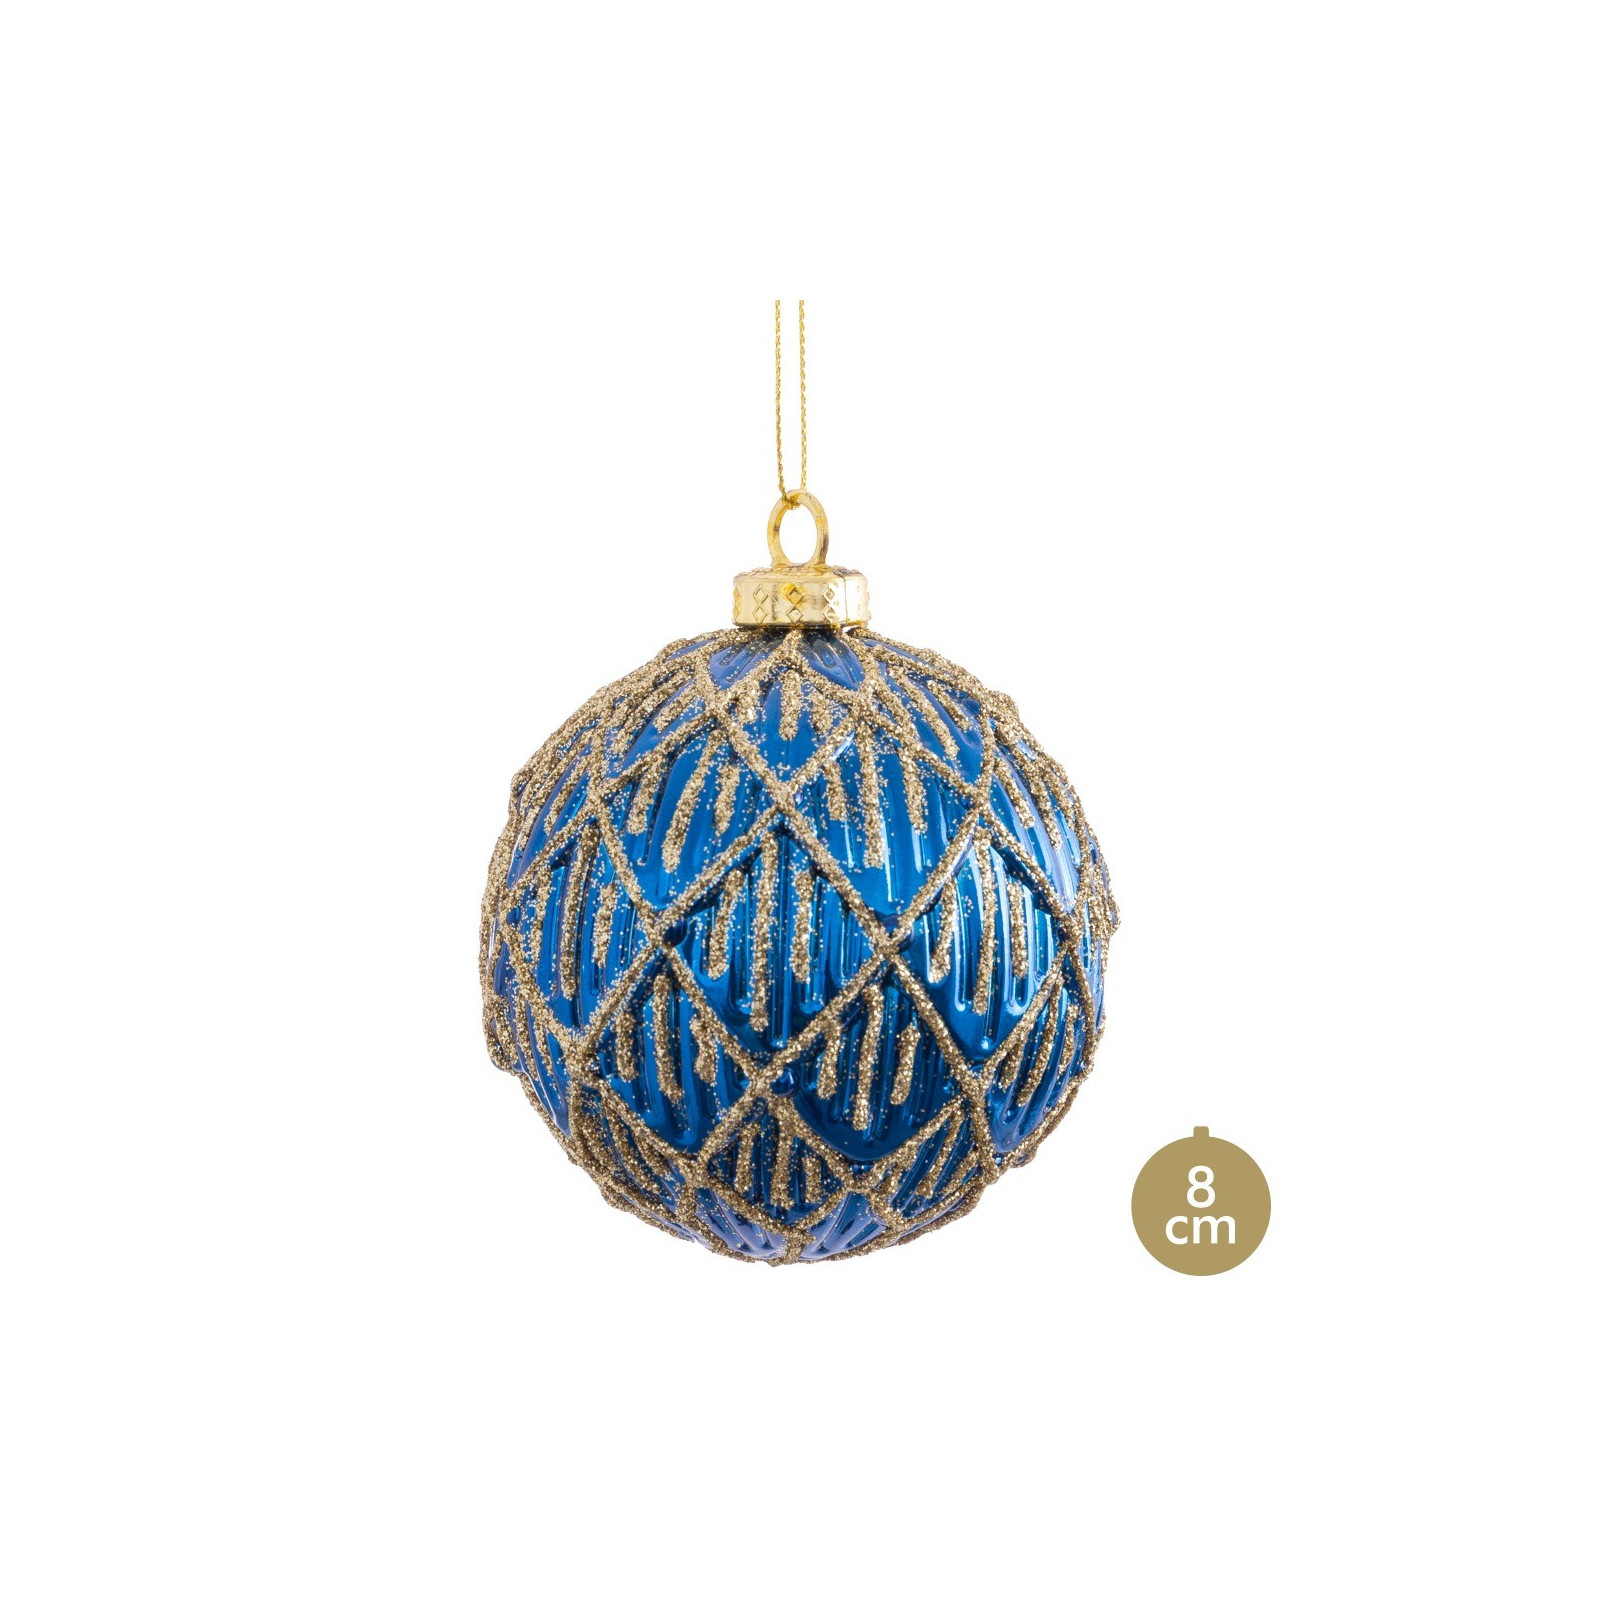 Bola decorada em azul 8 x 8 x 8 cm